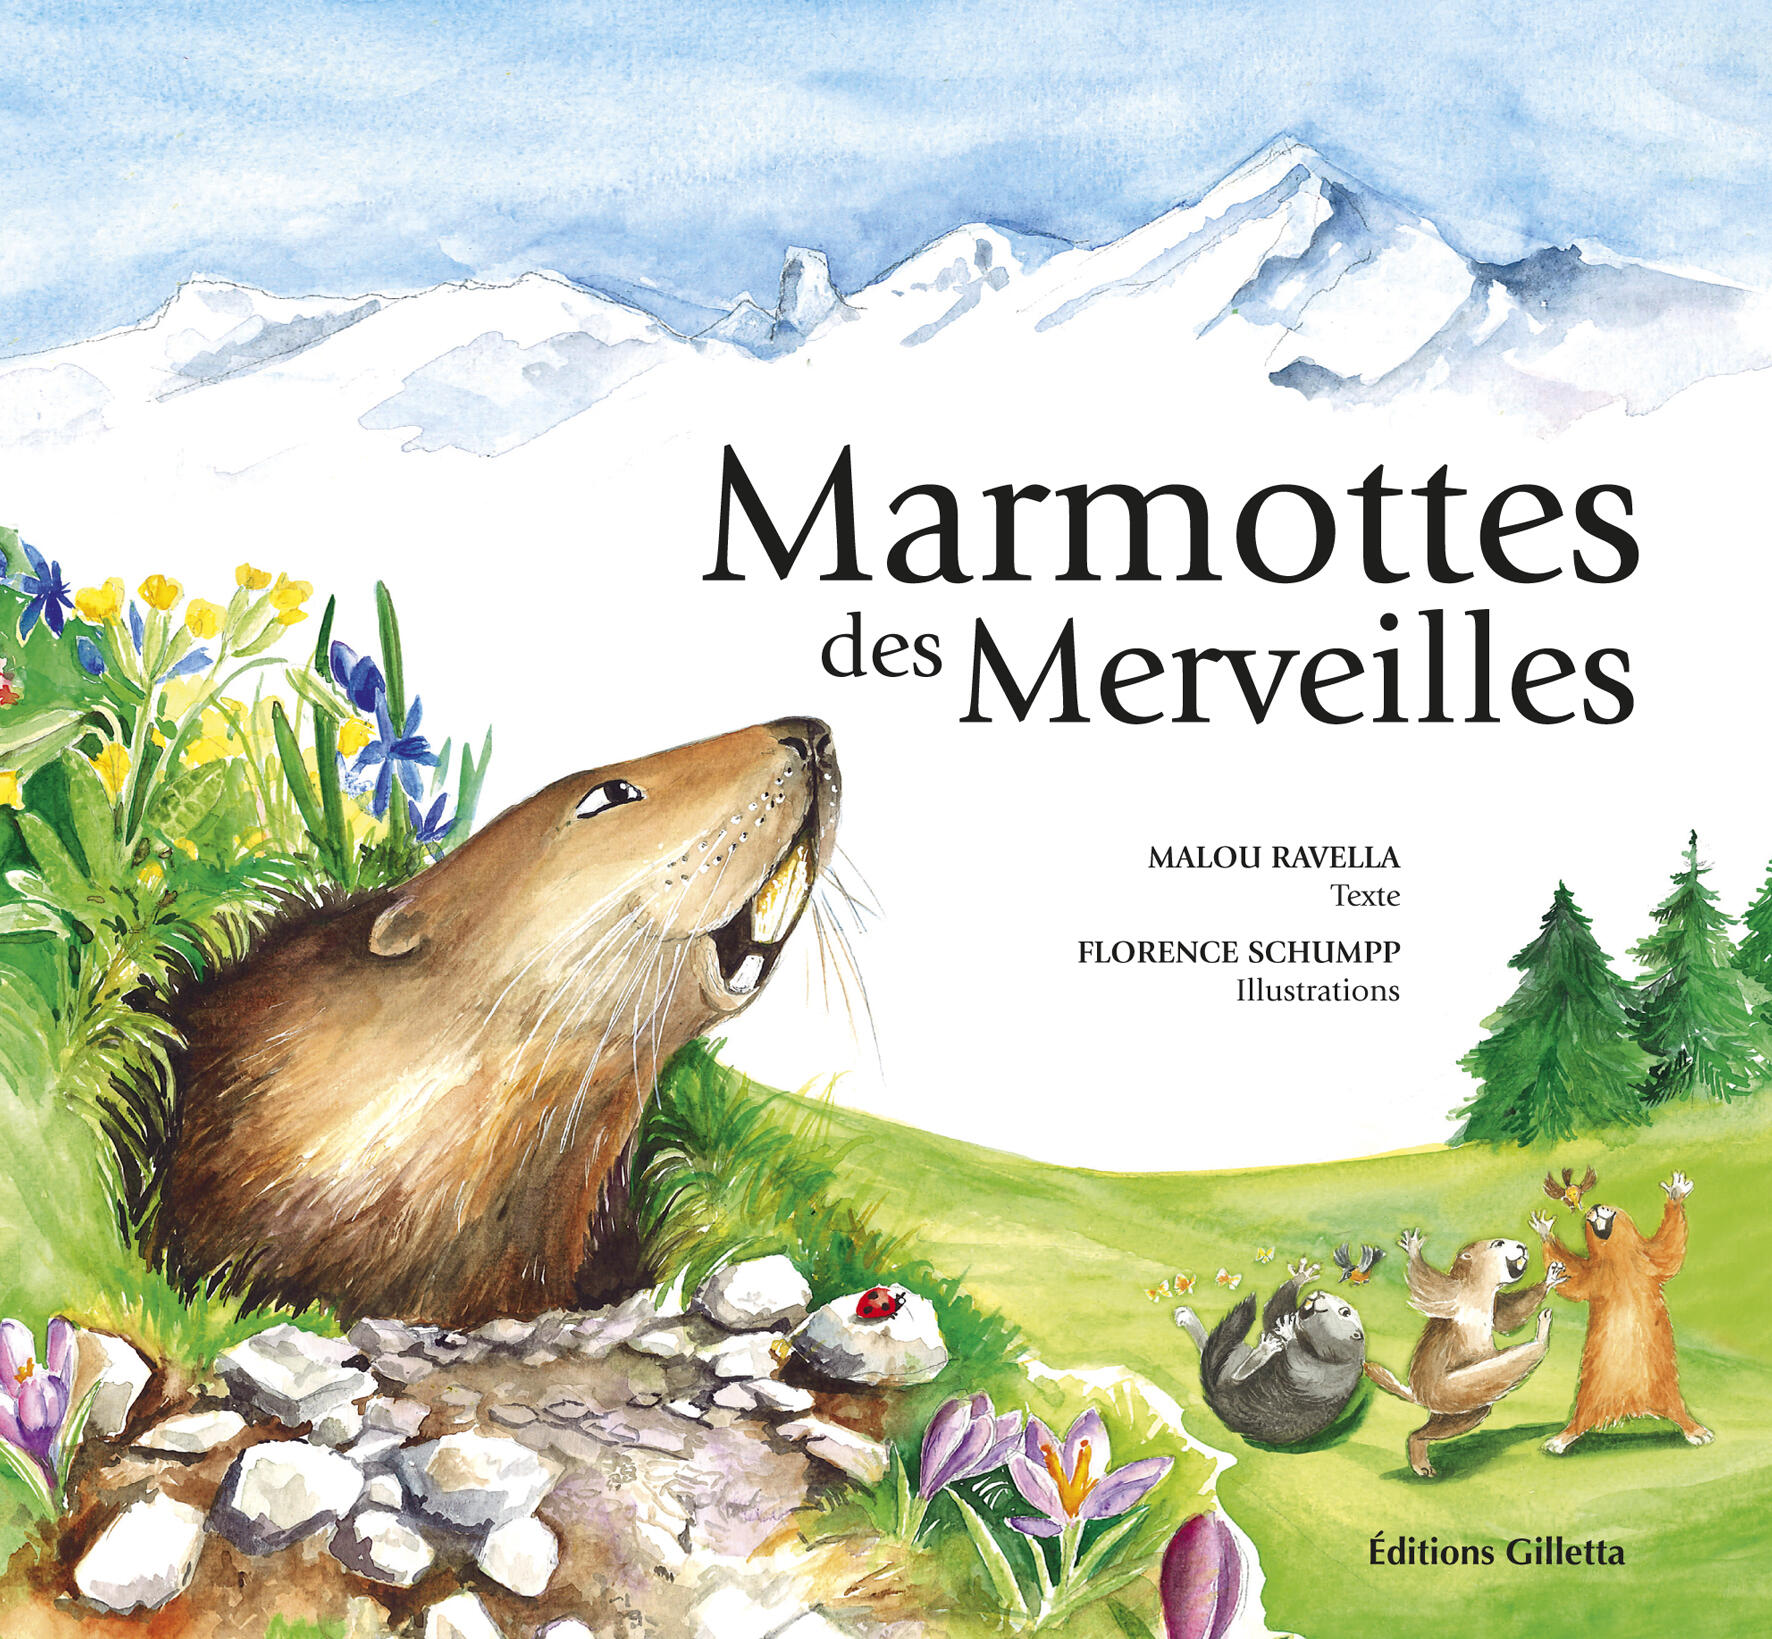 Marmottes des Merveilles